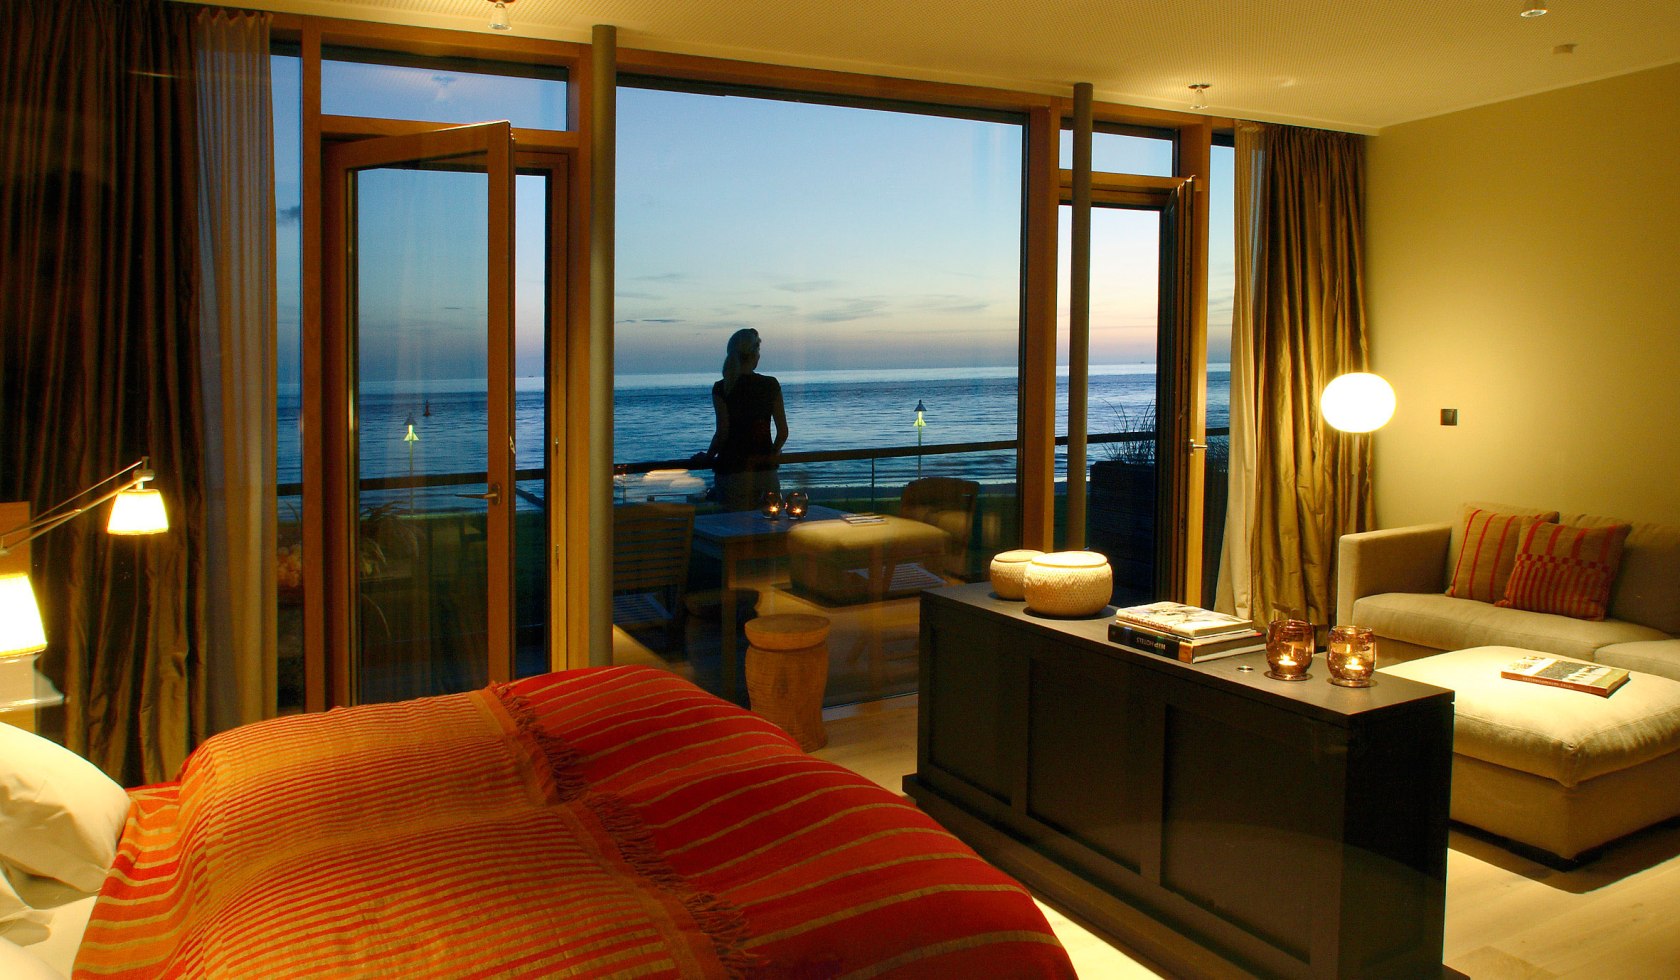 Hotelzimmer mit Ausblick auf das Meer bei Abendstimmung, © Hotel Seesteg Norderney